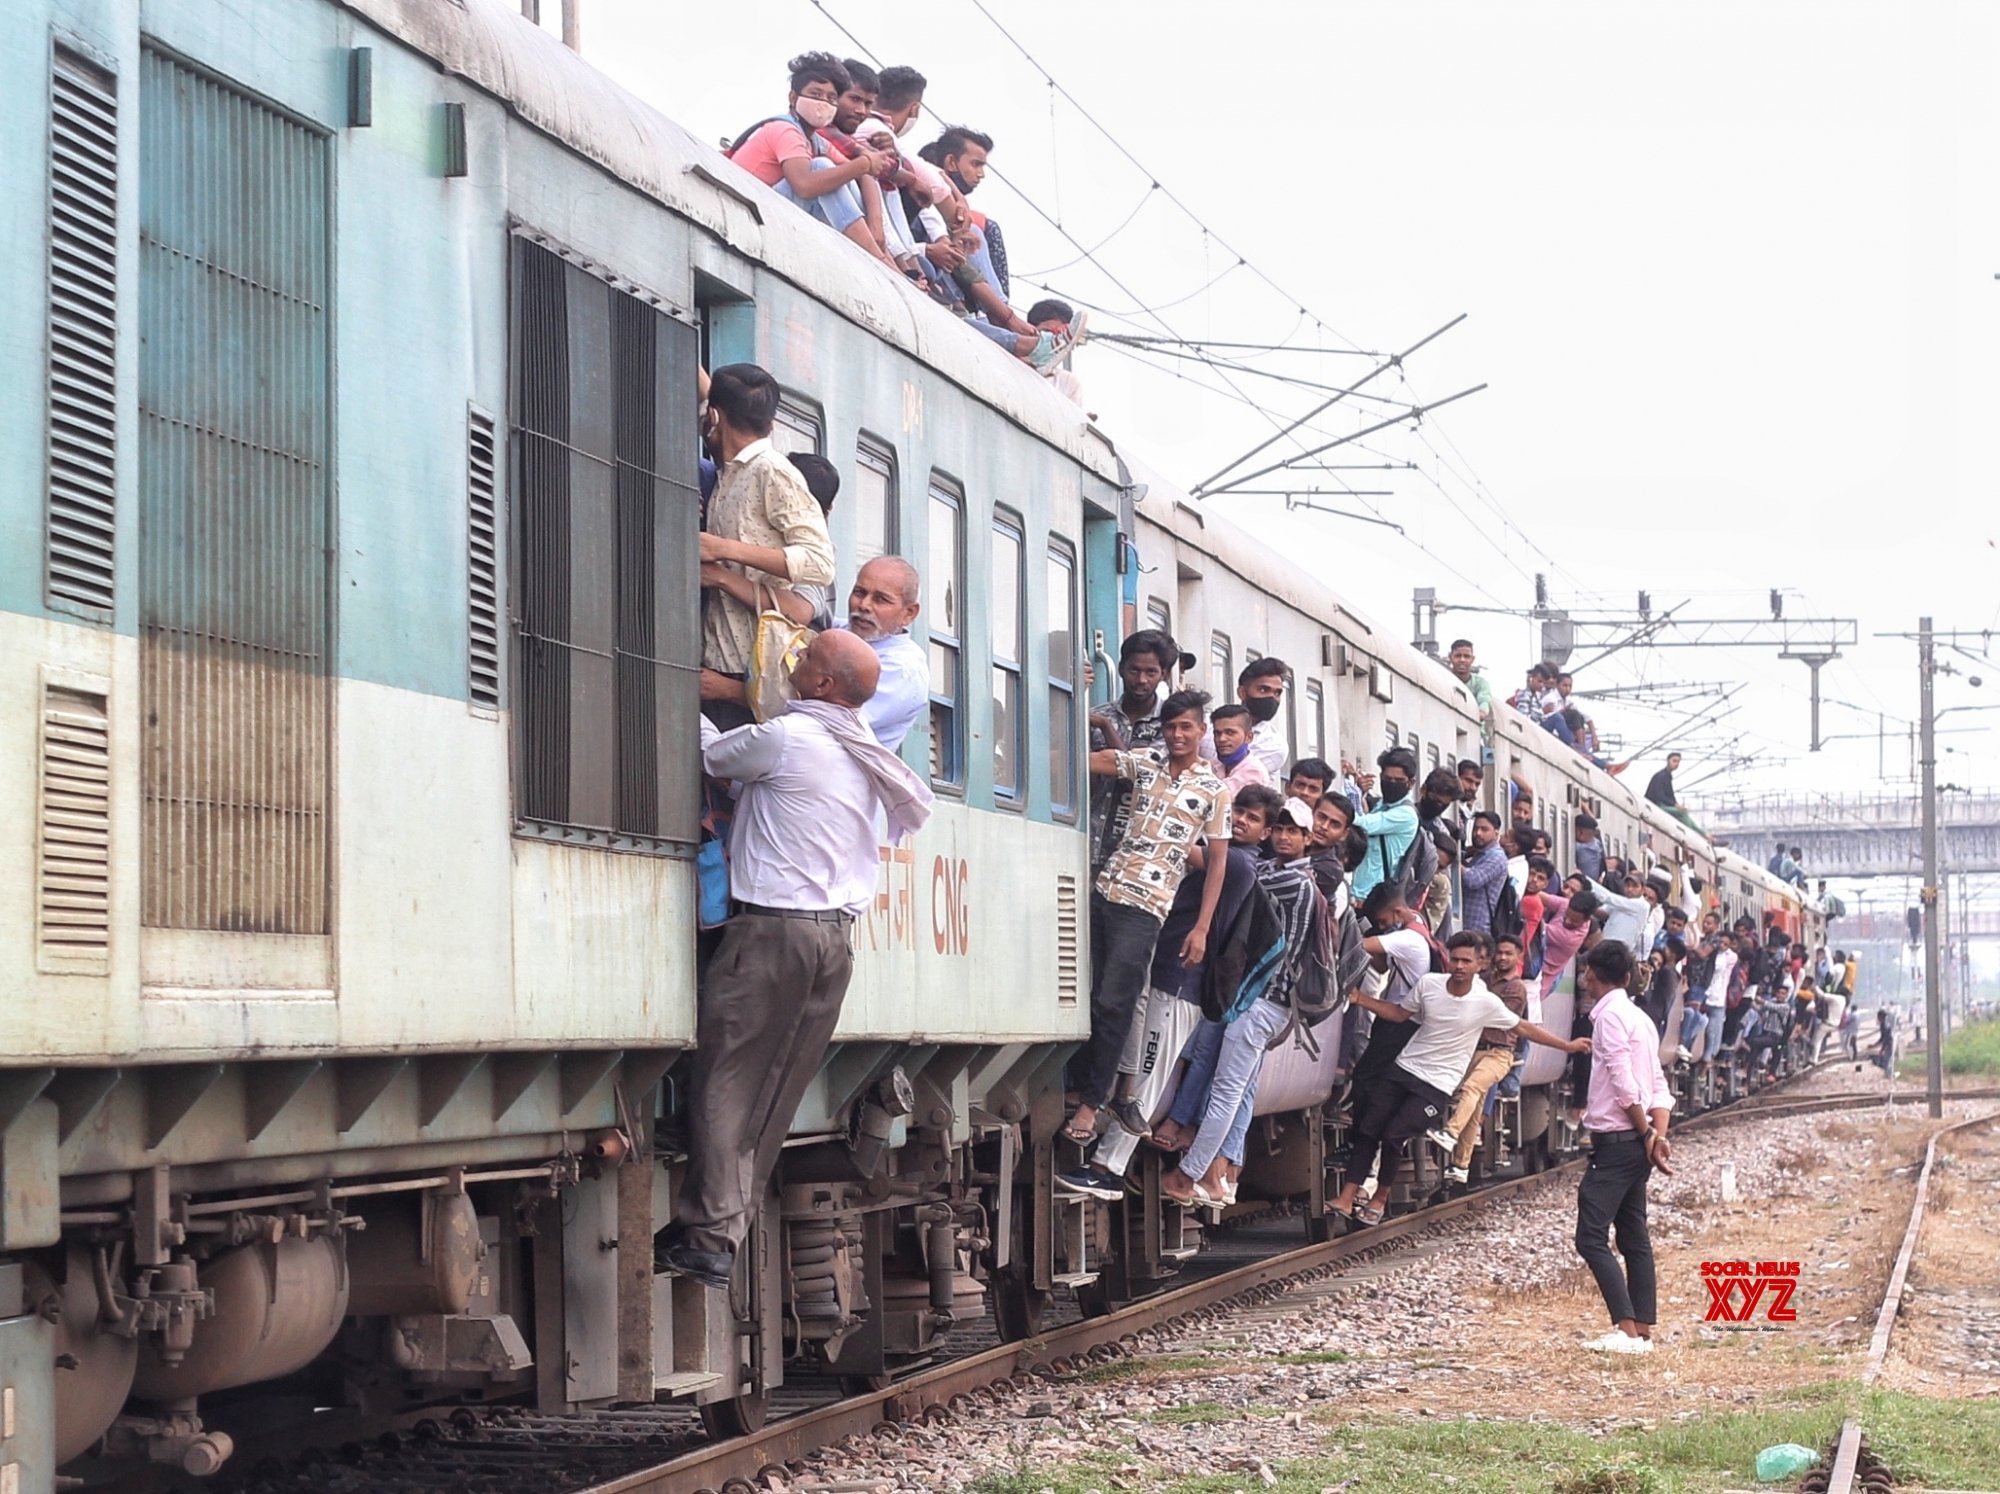 Γκαζιαμπάντ- Ινδία: Οι άνθρωποι προσκολλώνται σε ένα γεμάτο τρένο καθώς φεύγουν από το σταθμό Noli. Εικόνες. - Φωτογραφία 4